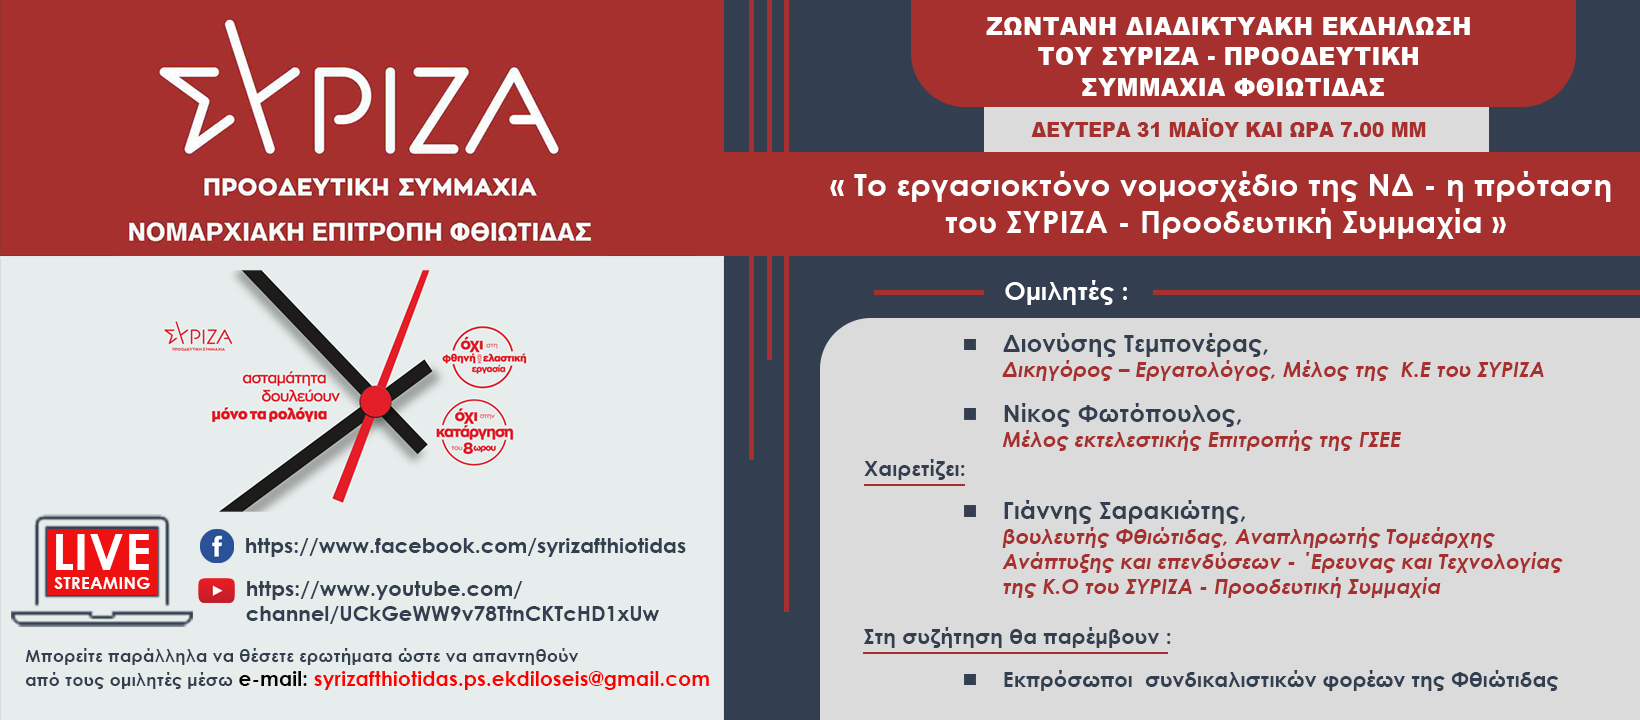 Ζωντανή διαδικτυακή εκδήλωση – συζήτηση του ΣΥΡΙΖΑ – ΠΣ Φθιώτιδας: Το εργασιοκτόνο νομοσχέδιο της ΝΔ και η πρόταση του ΣΥΡΙΖΑ – Προοδευτική Συμμαχία